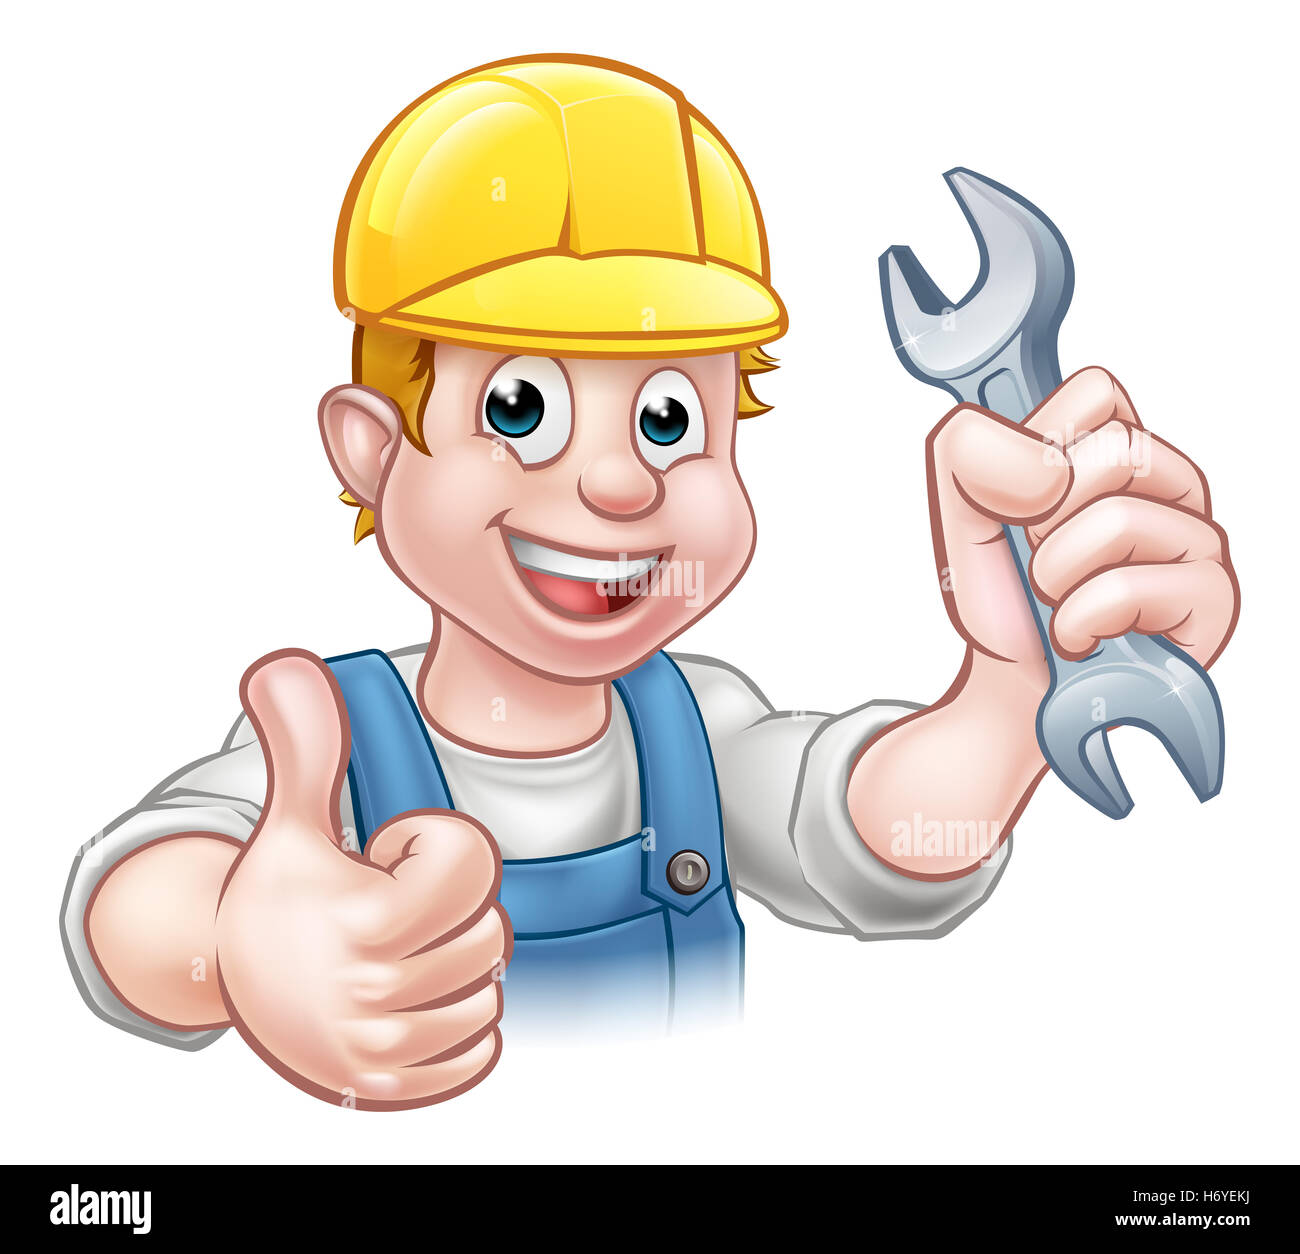 Ein Handwerker Mechaniker oder Klempner Cartoon-Figur hält einen Schraubenschlüssel und geben einen Daumen nach oben Stockfoto